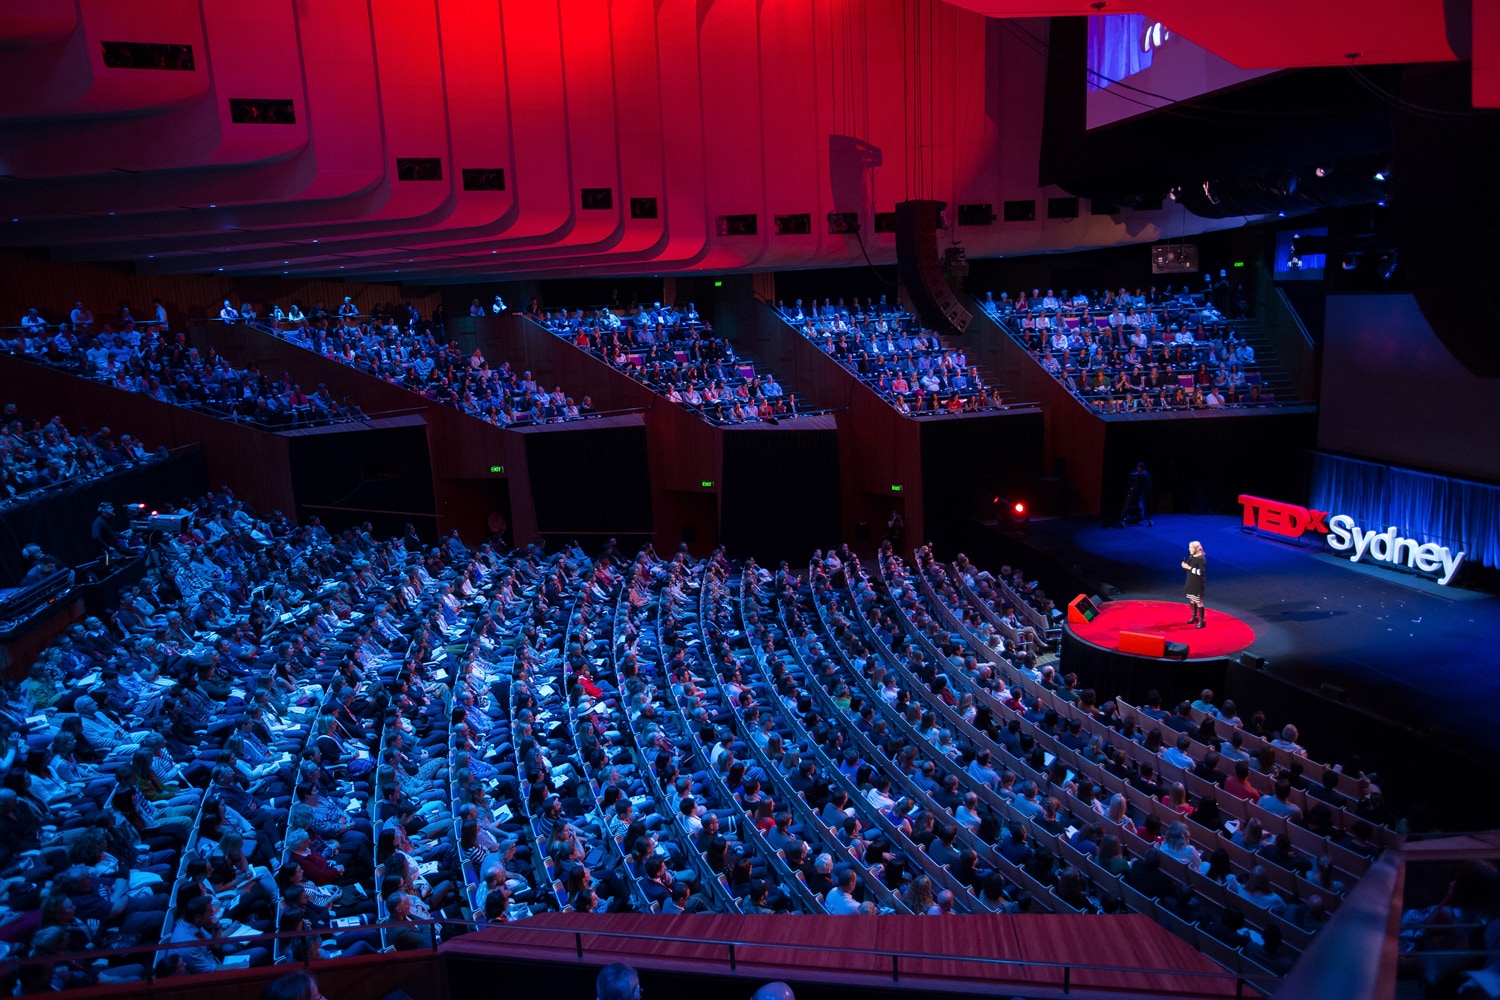 TEDx Sydney The University of Sydney